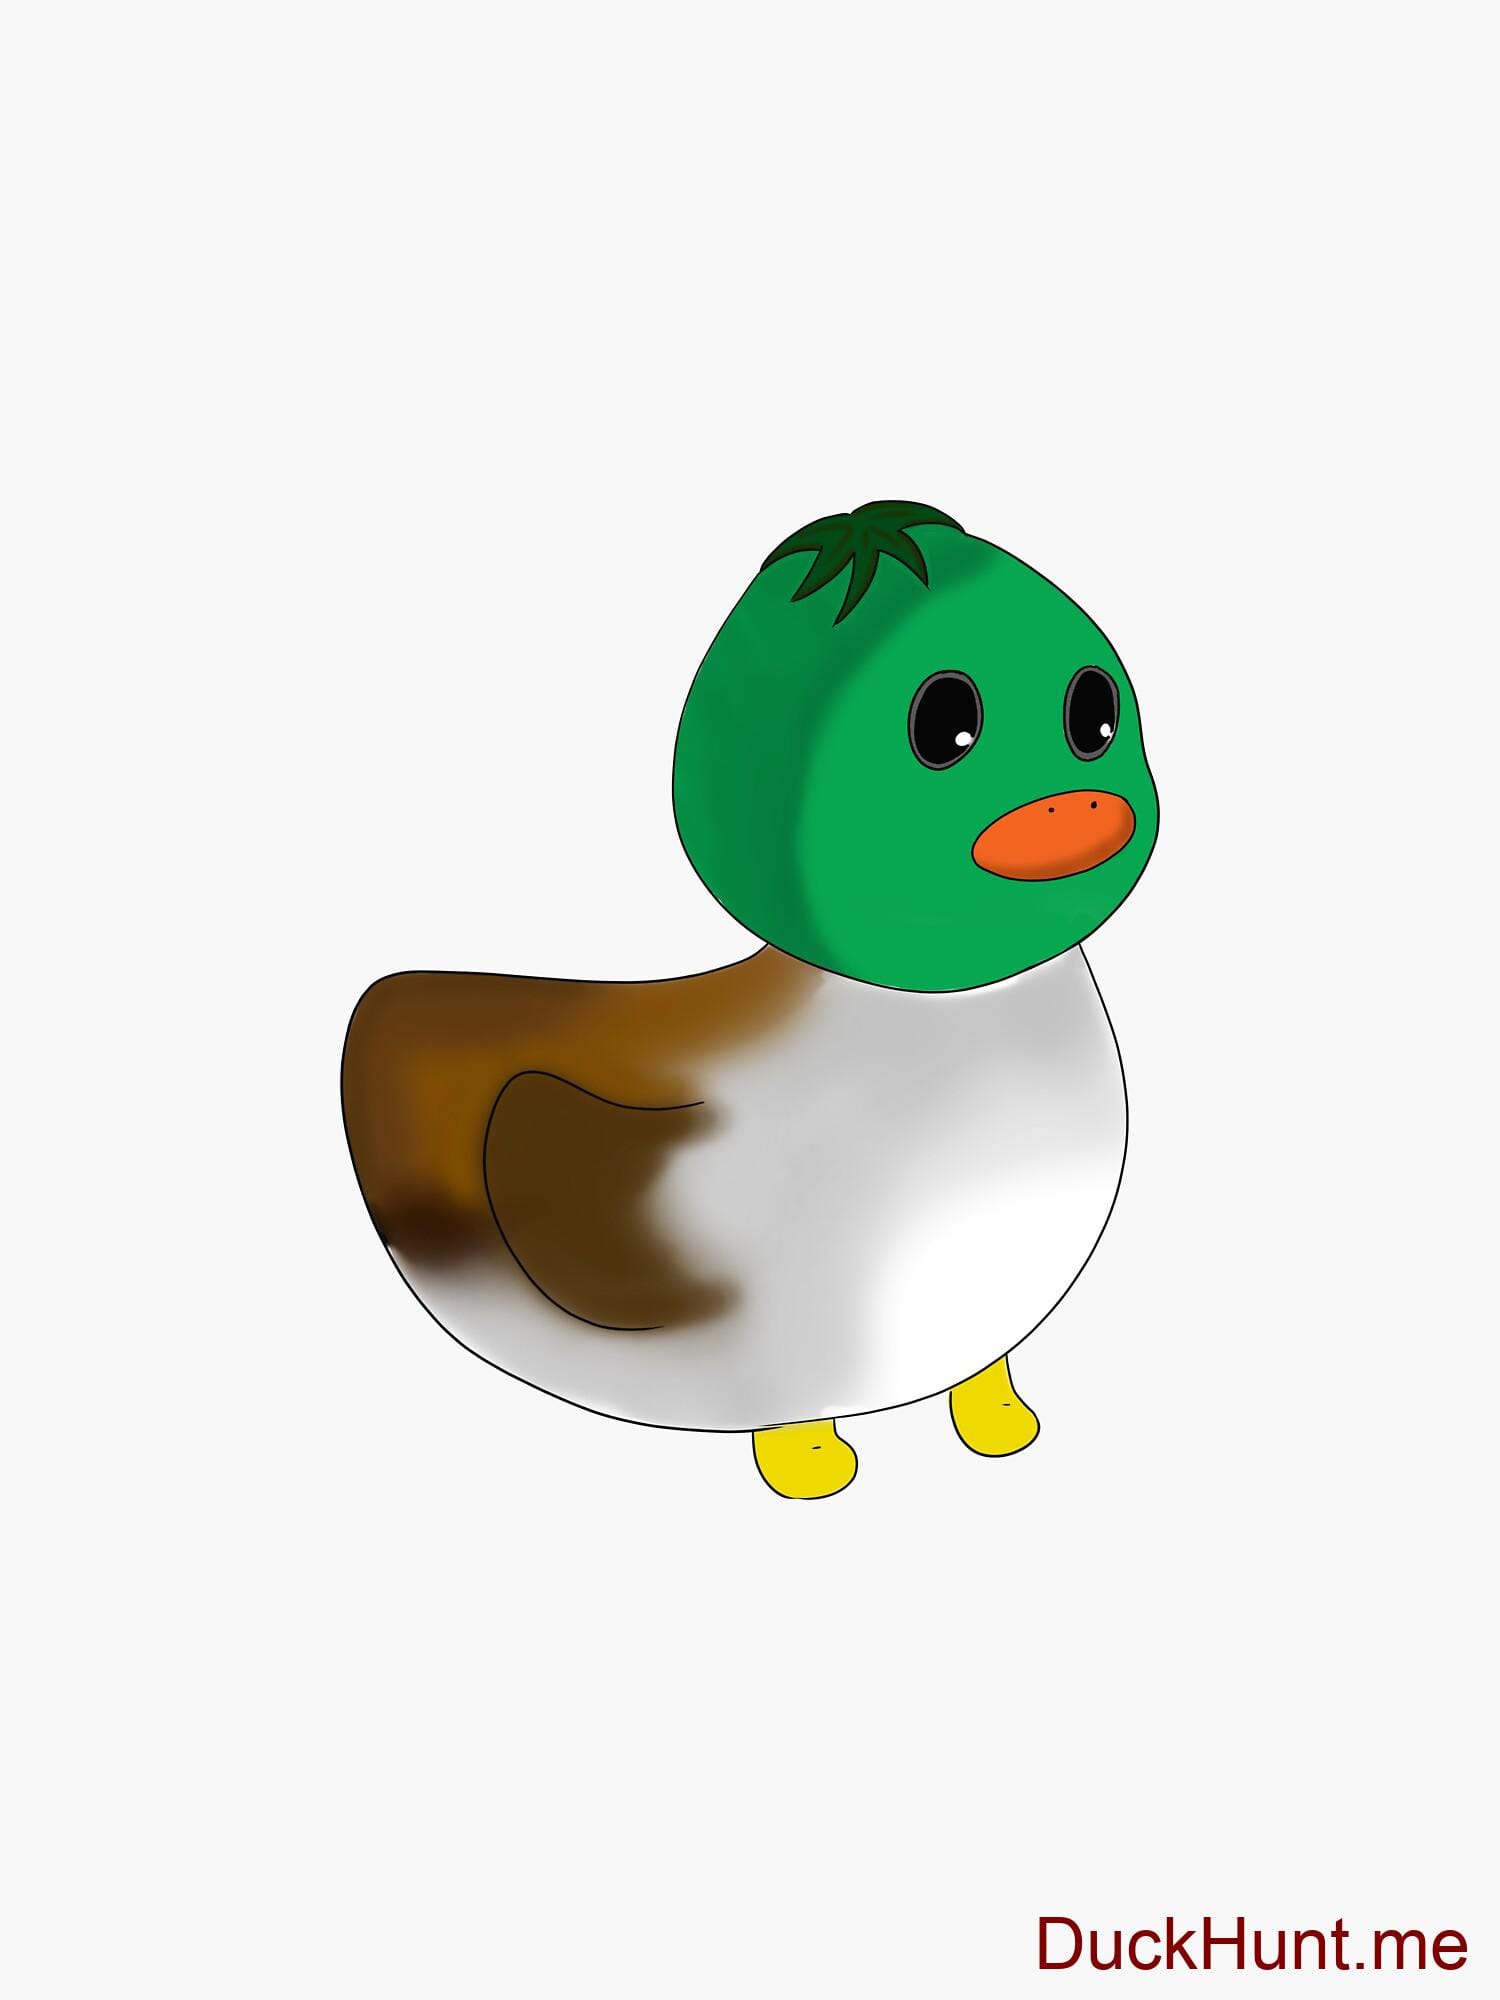 Normal Duck Sticker alternative image 2